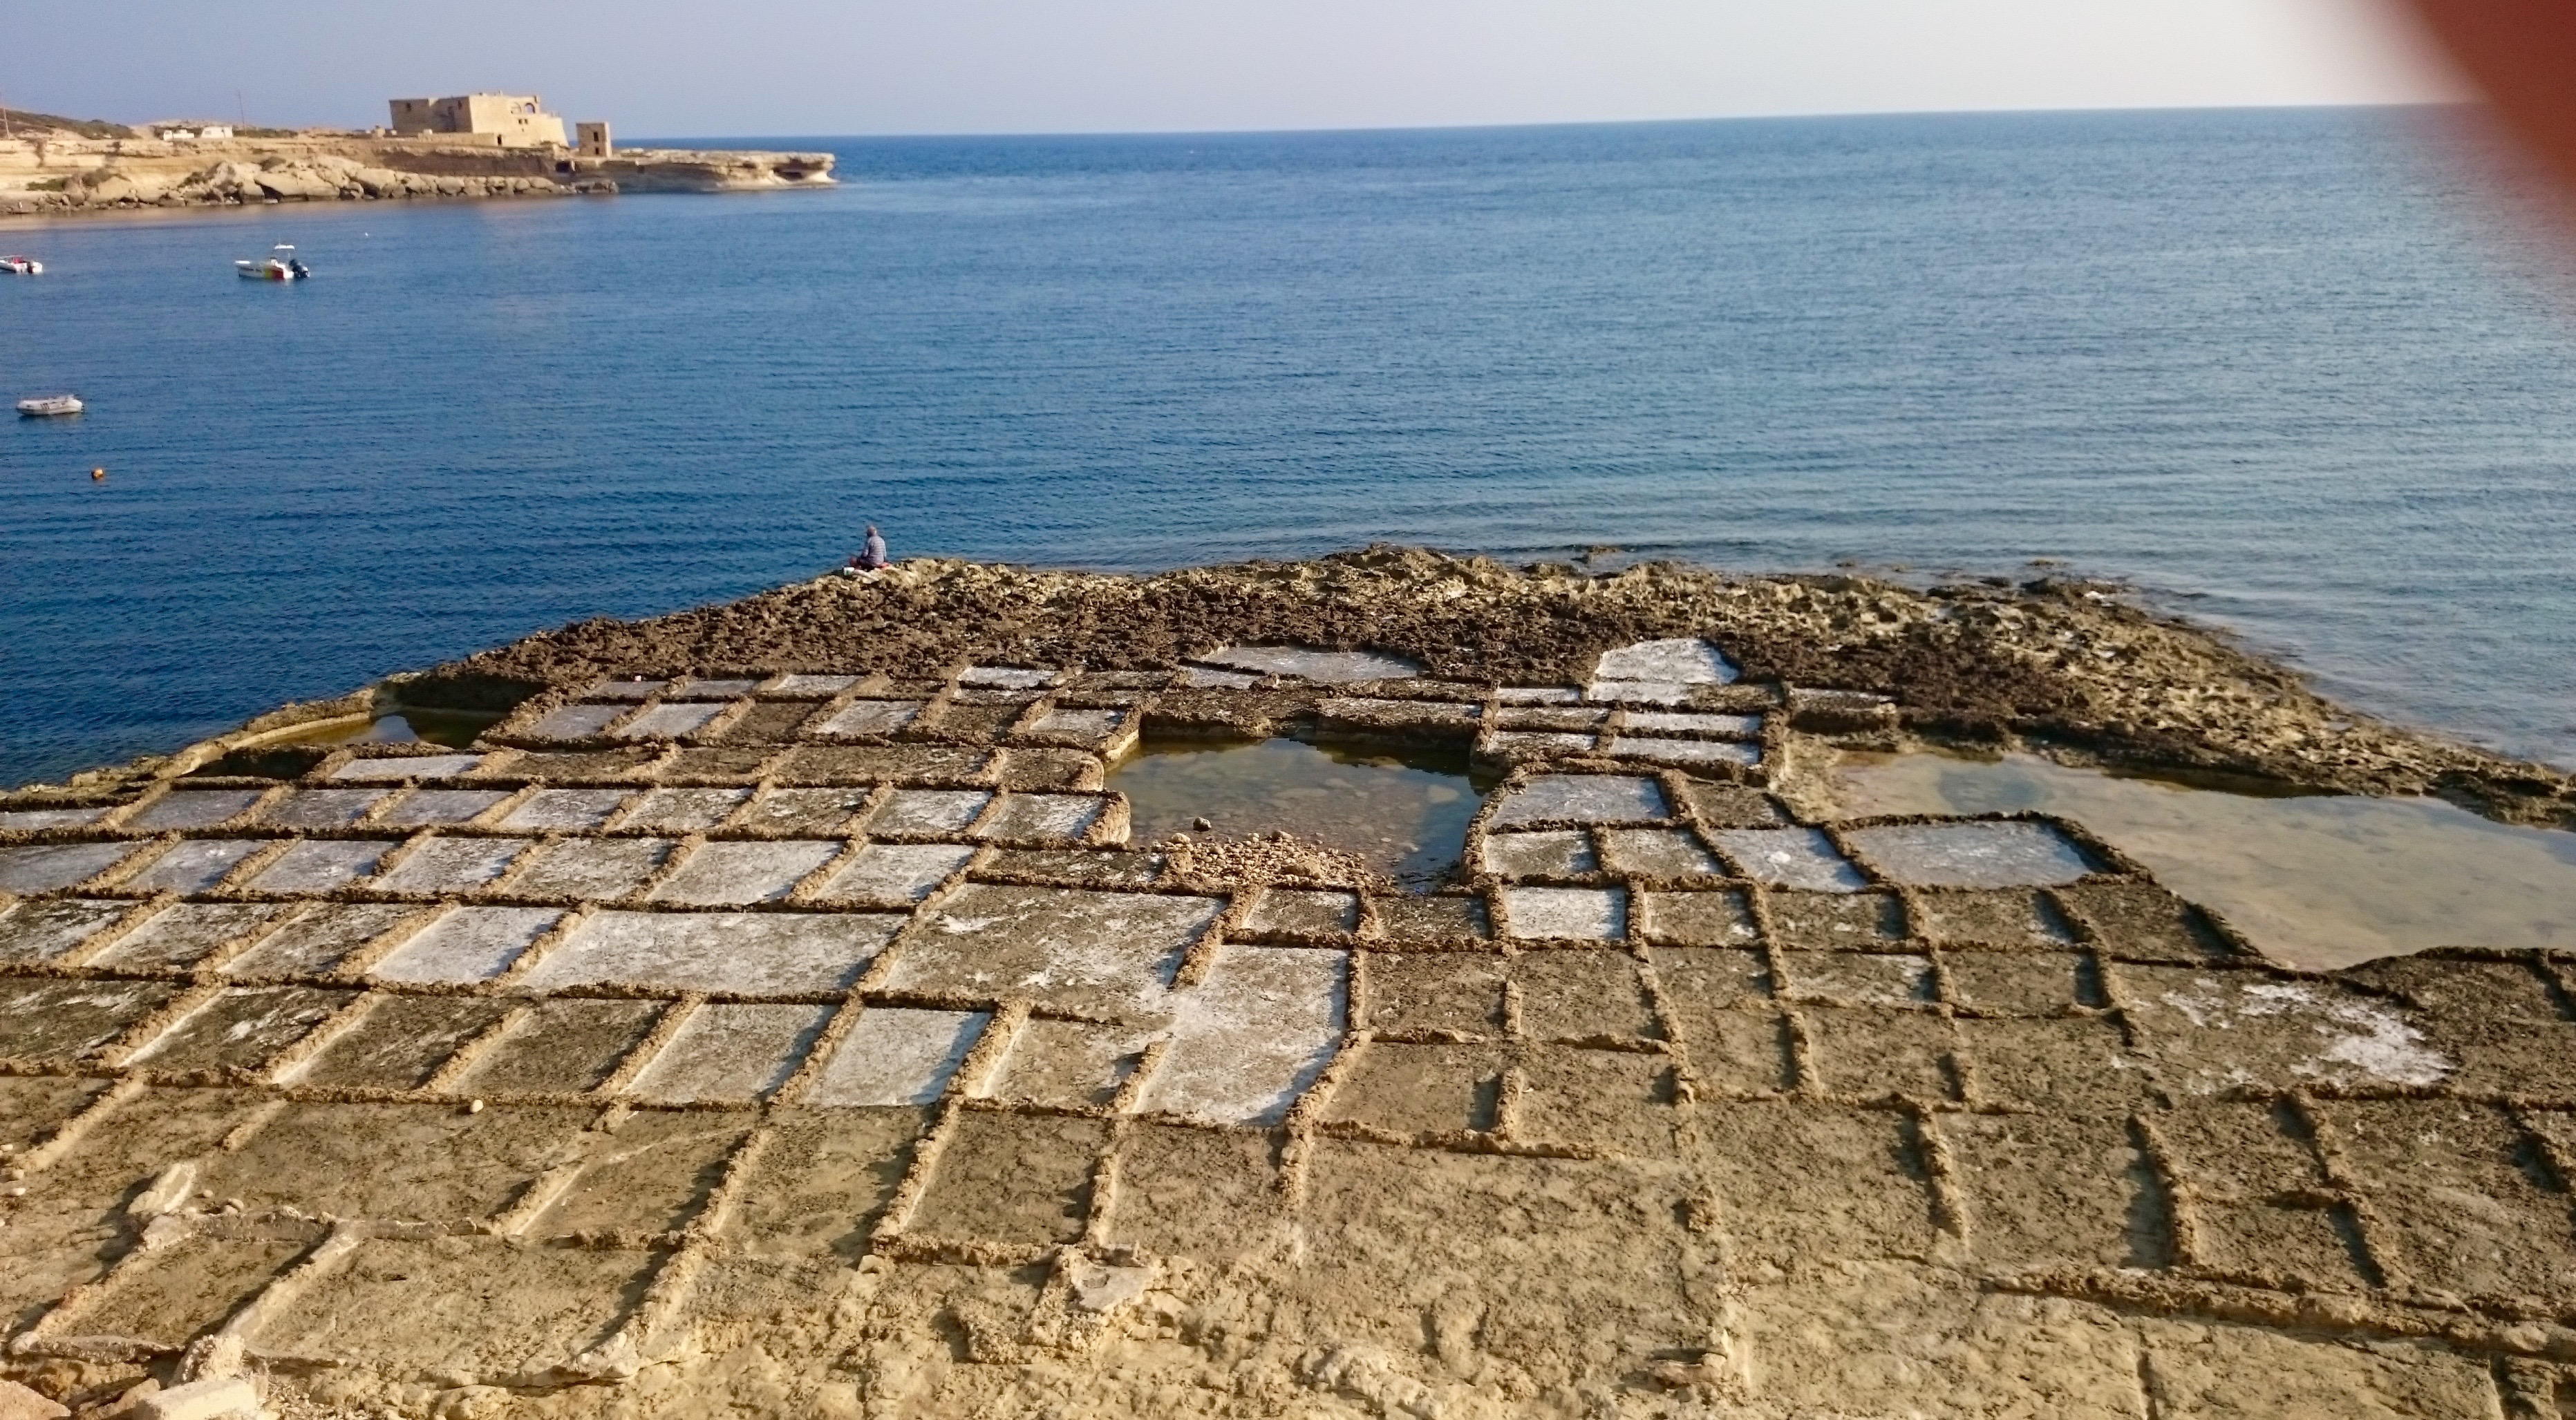 Spory odcinek północnego wybrzeża na Gozo wygląda właśnie tak. To sposób wydobywania soli z morza, który opracowali starożytni rzymianie. Na Malcie korzystają z niego aż po dziś dzień.